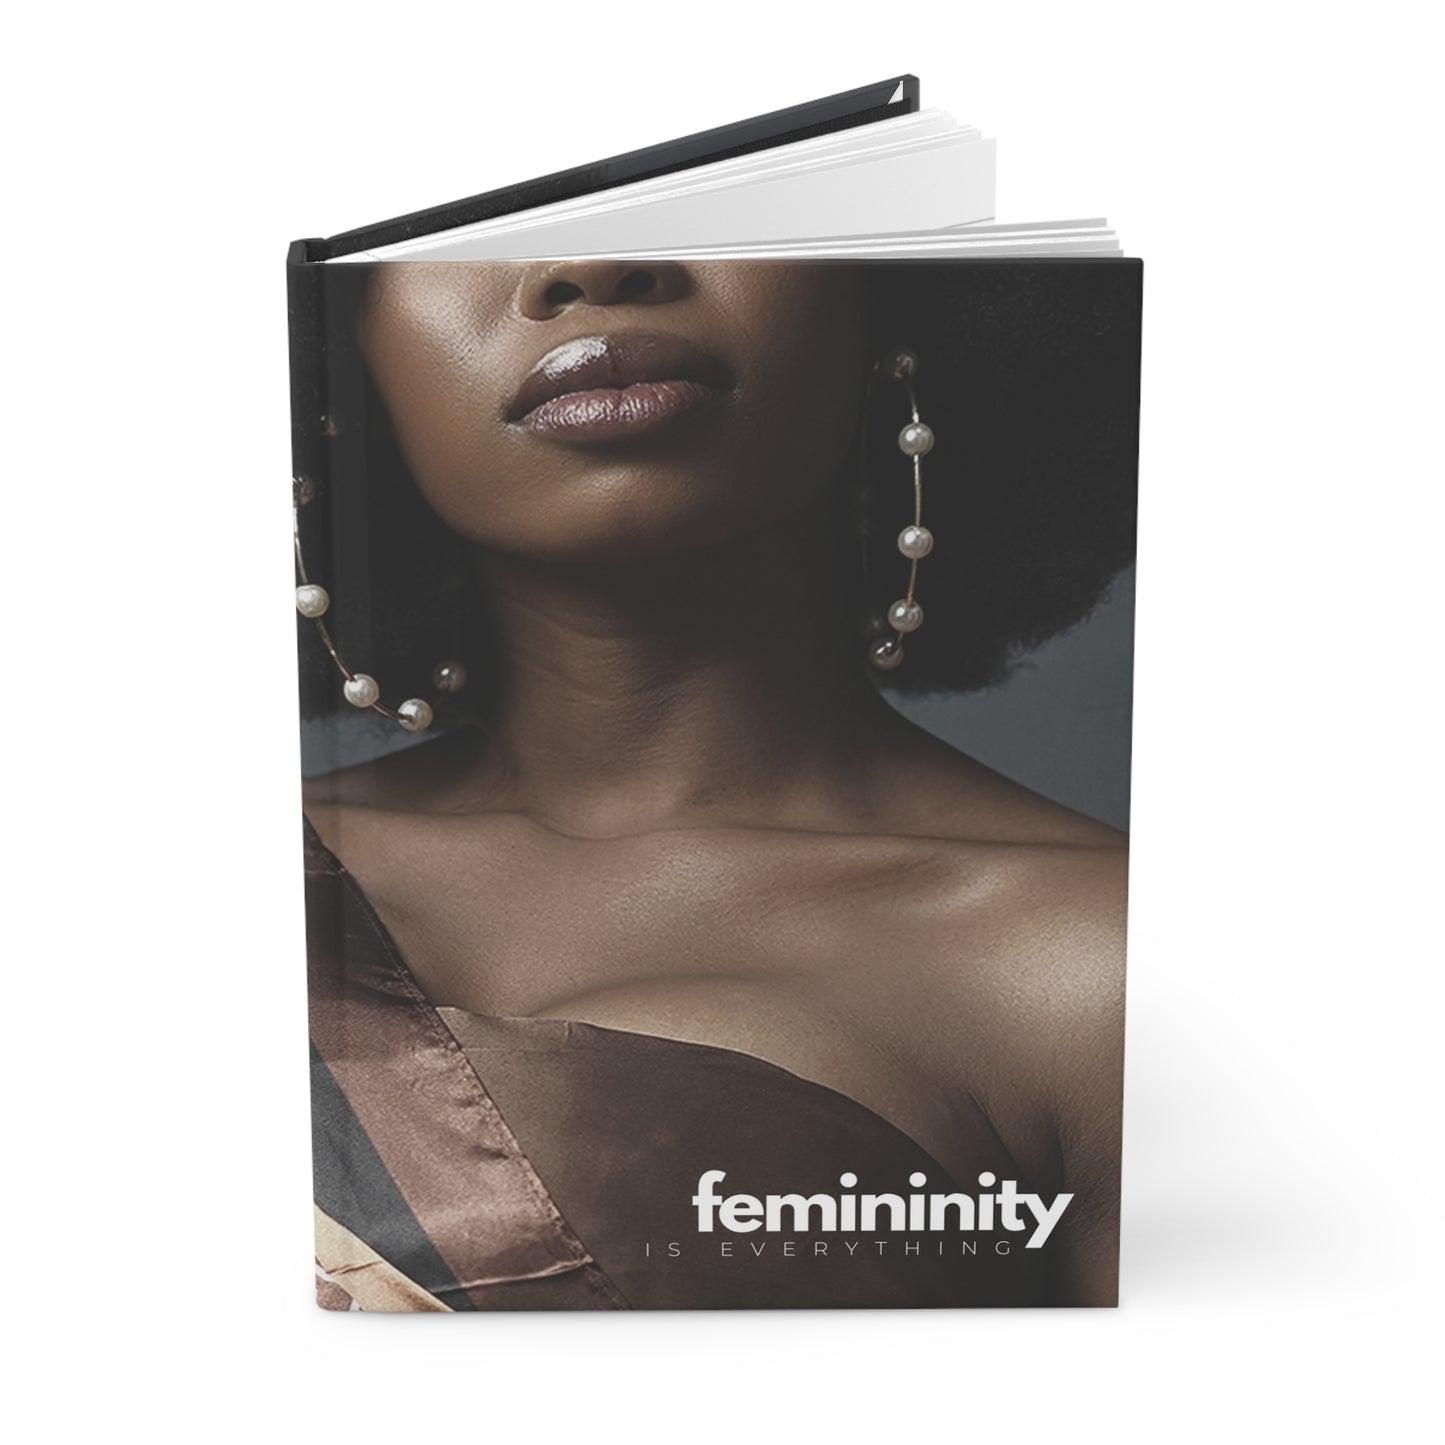 "femininity is everything" Velvety Matte Hardcover Journal